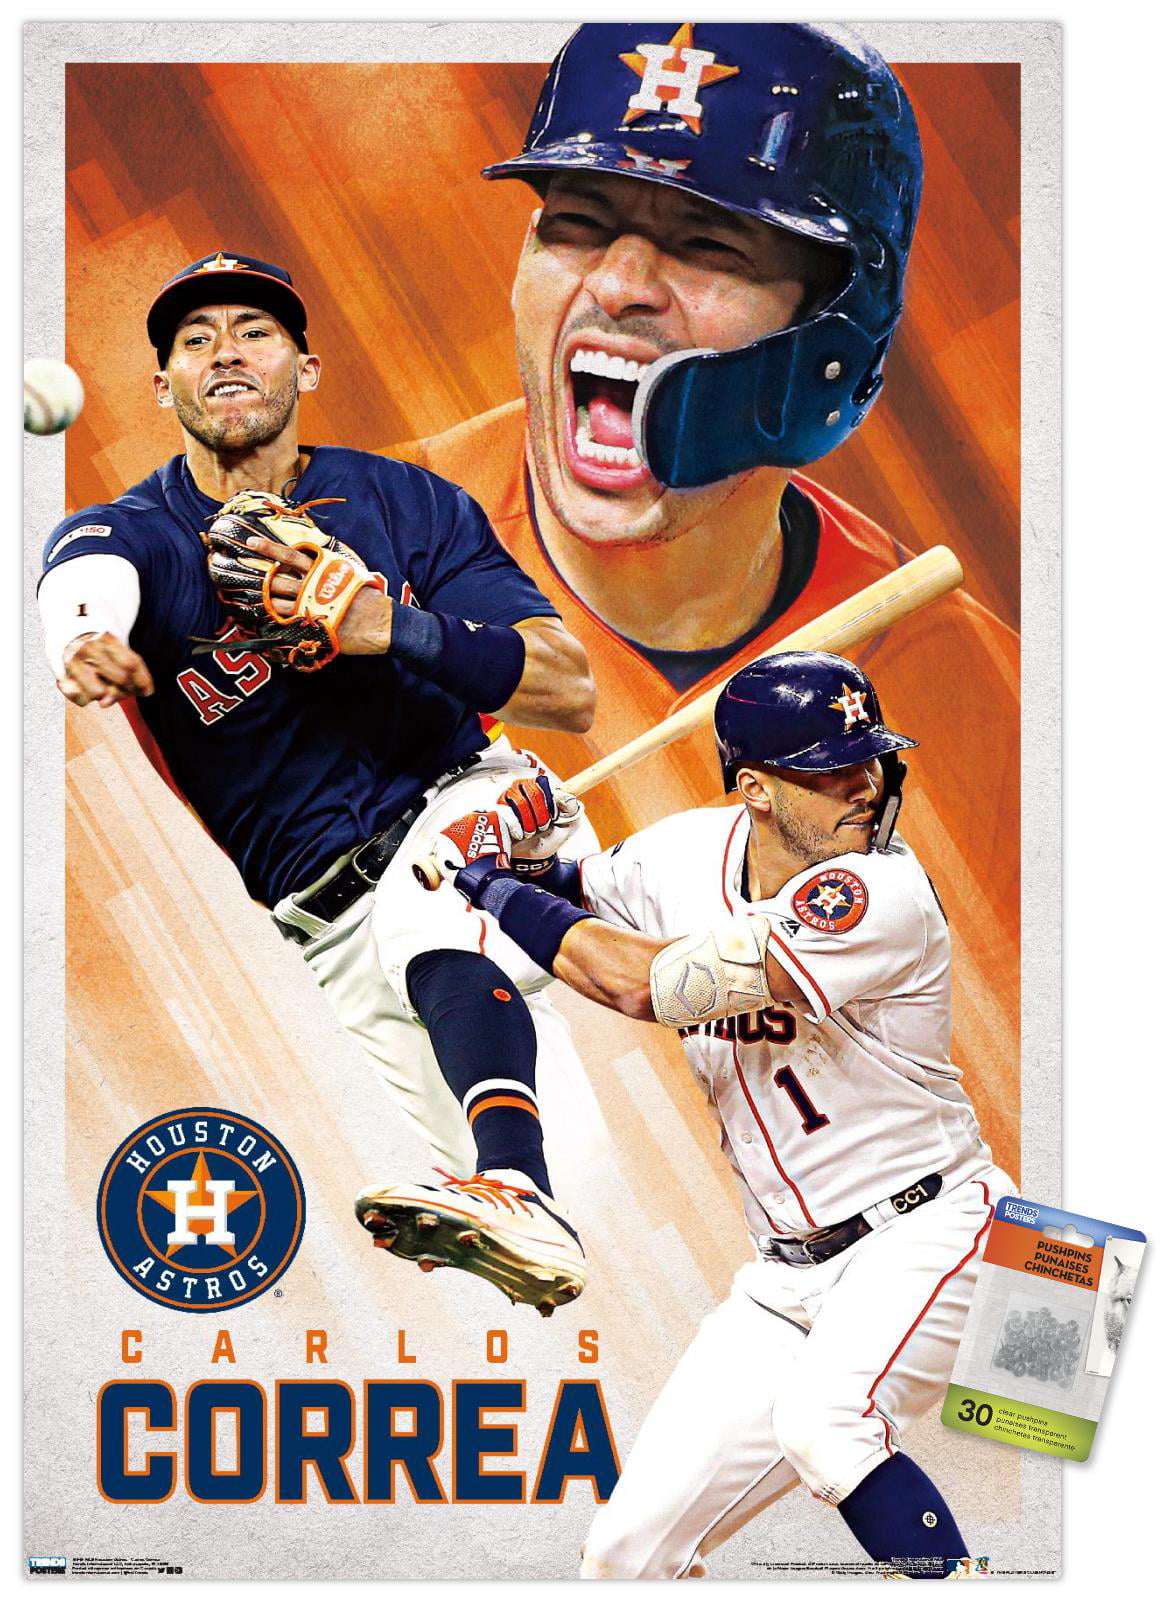 MLB Houston Astros - Carlos Correa  Houston astros, Astros, Carlos correa